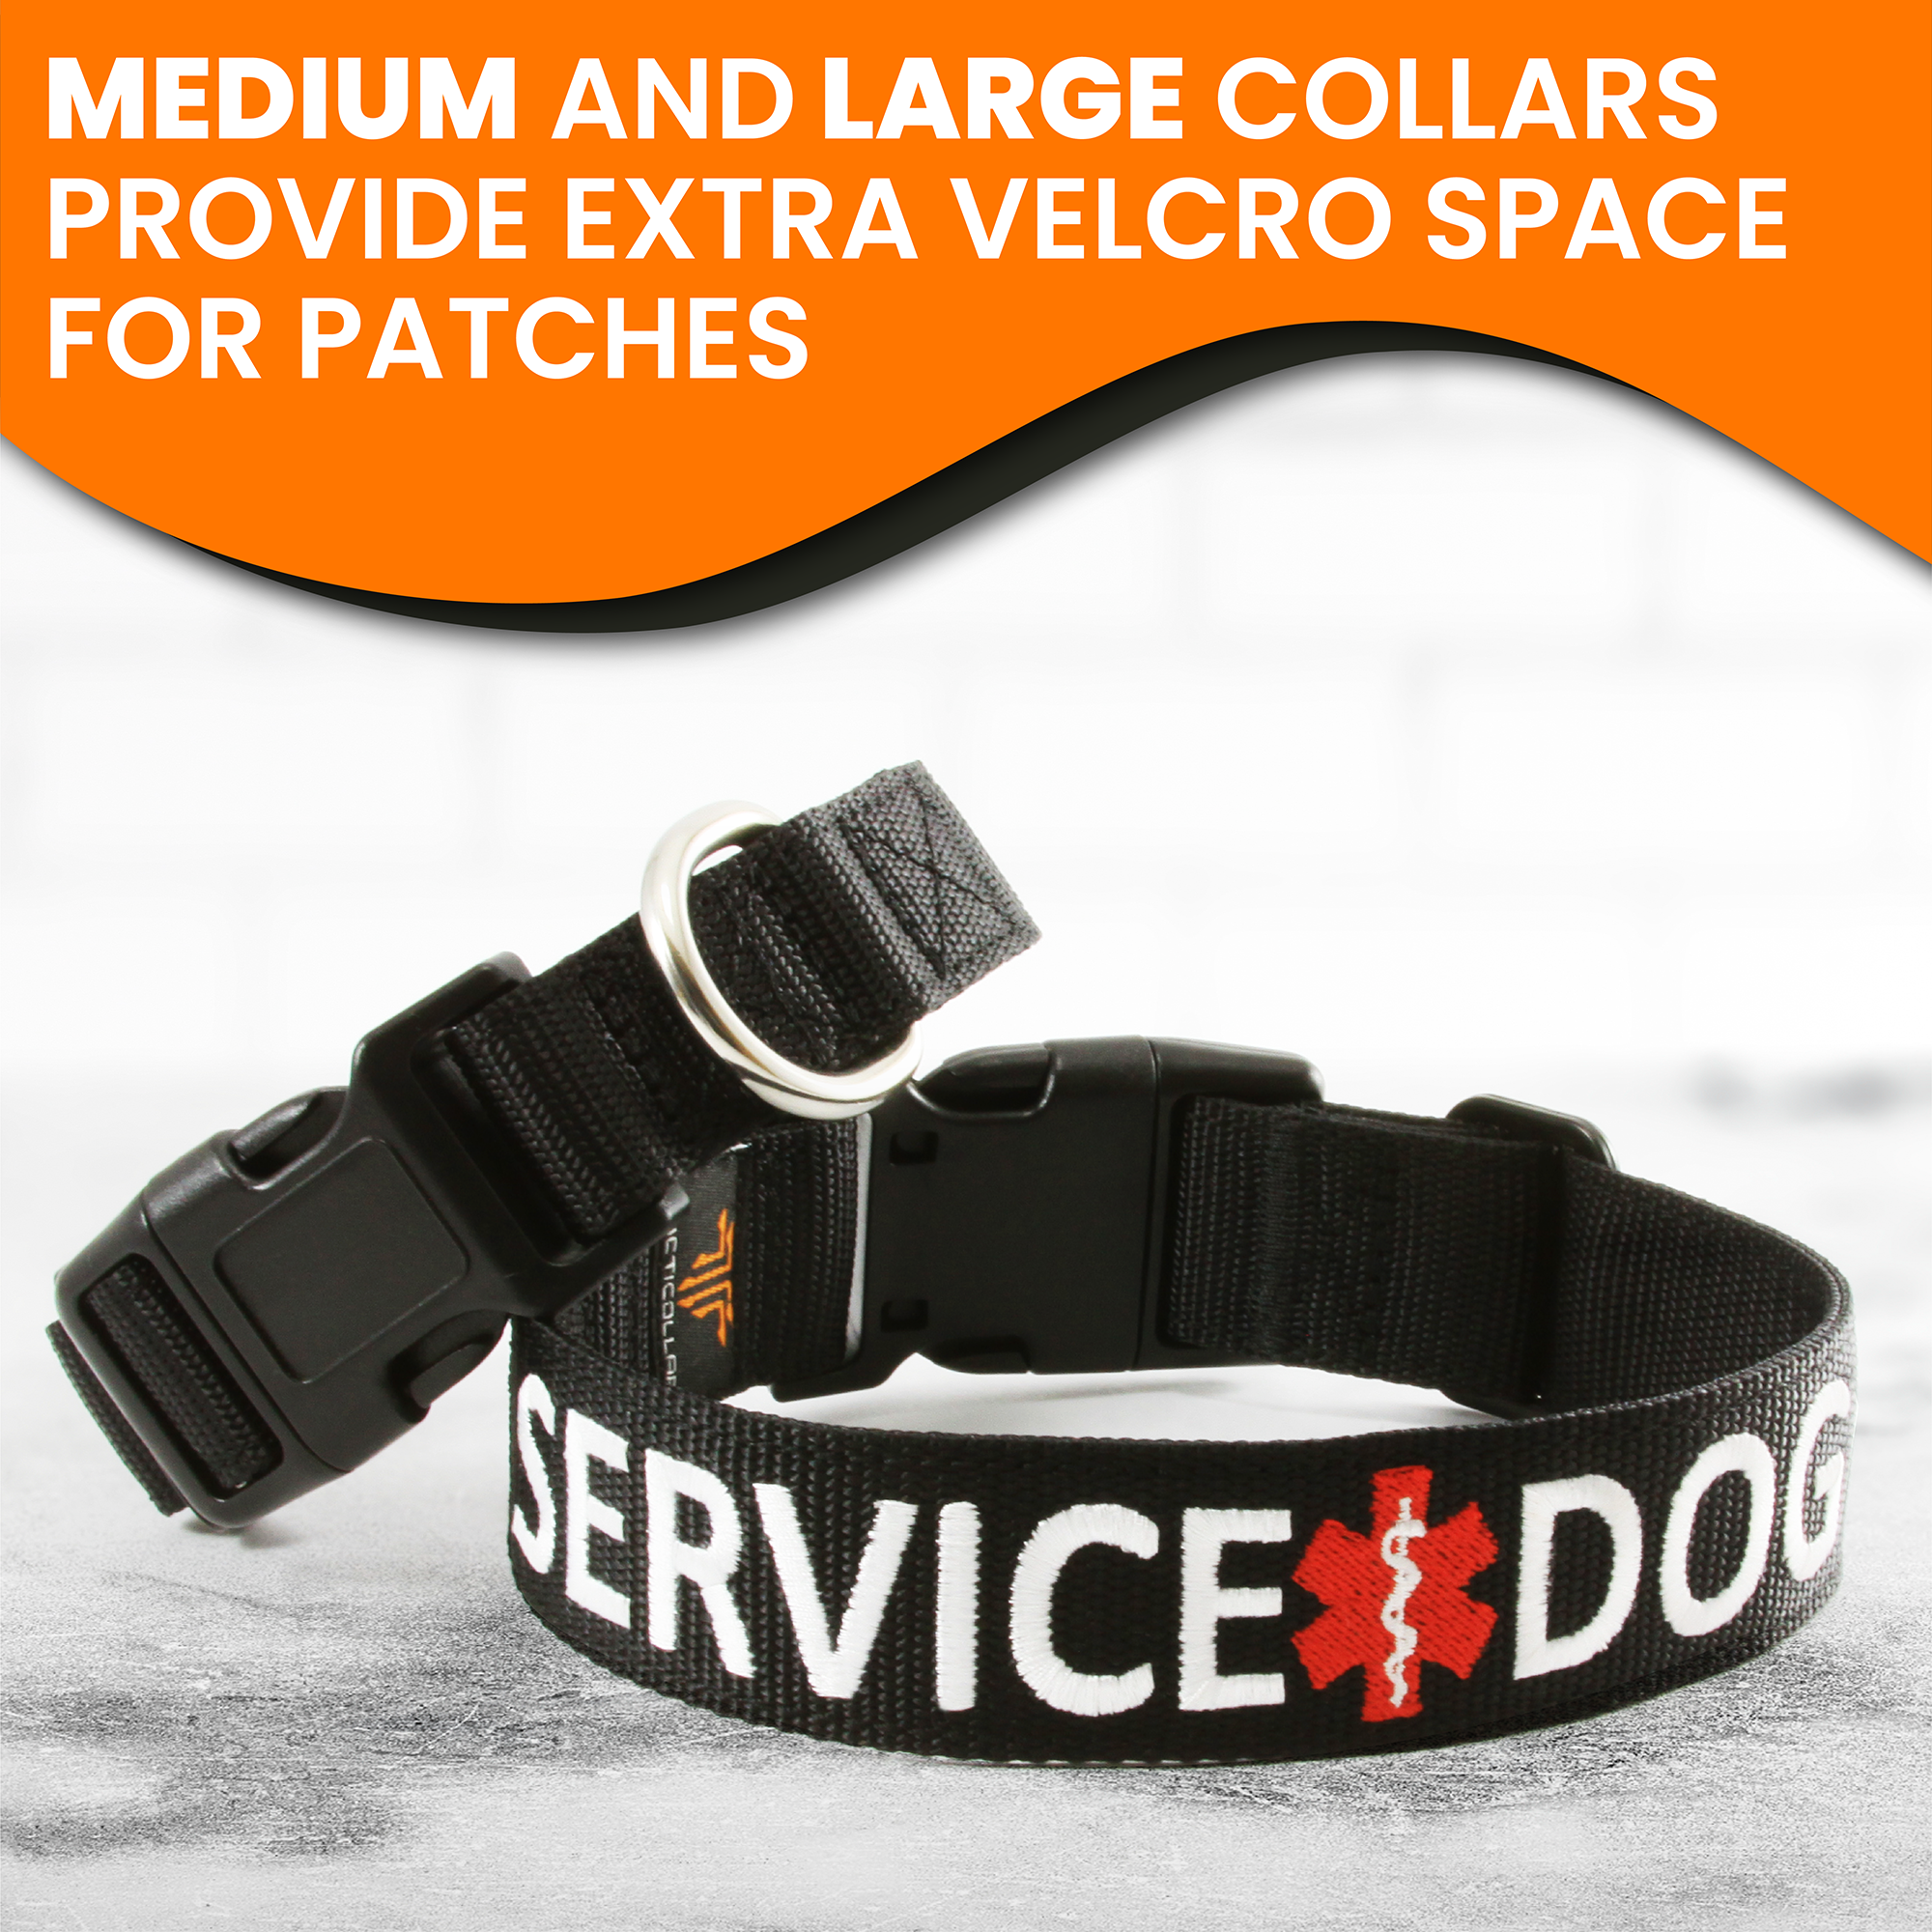 Service dog collar